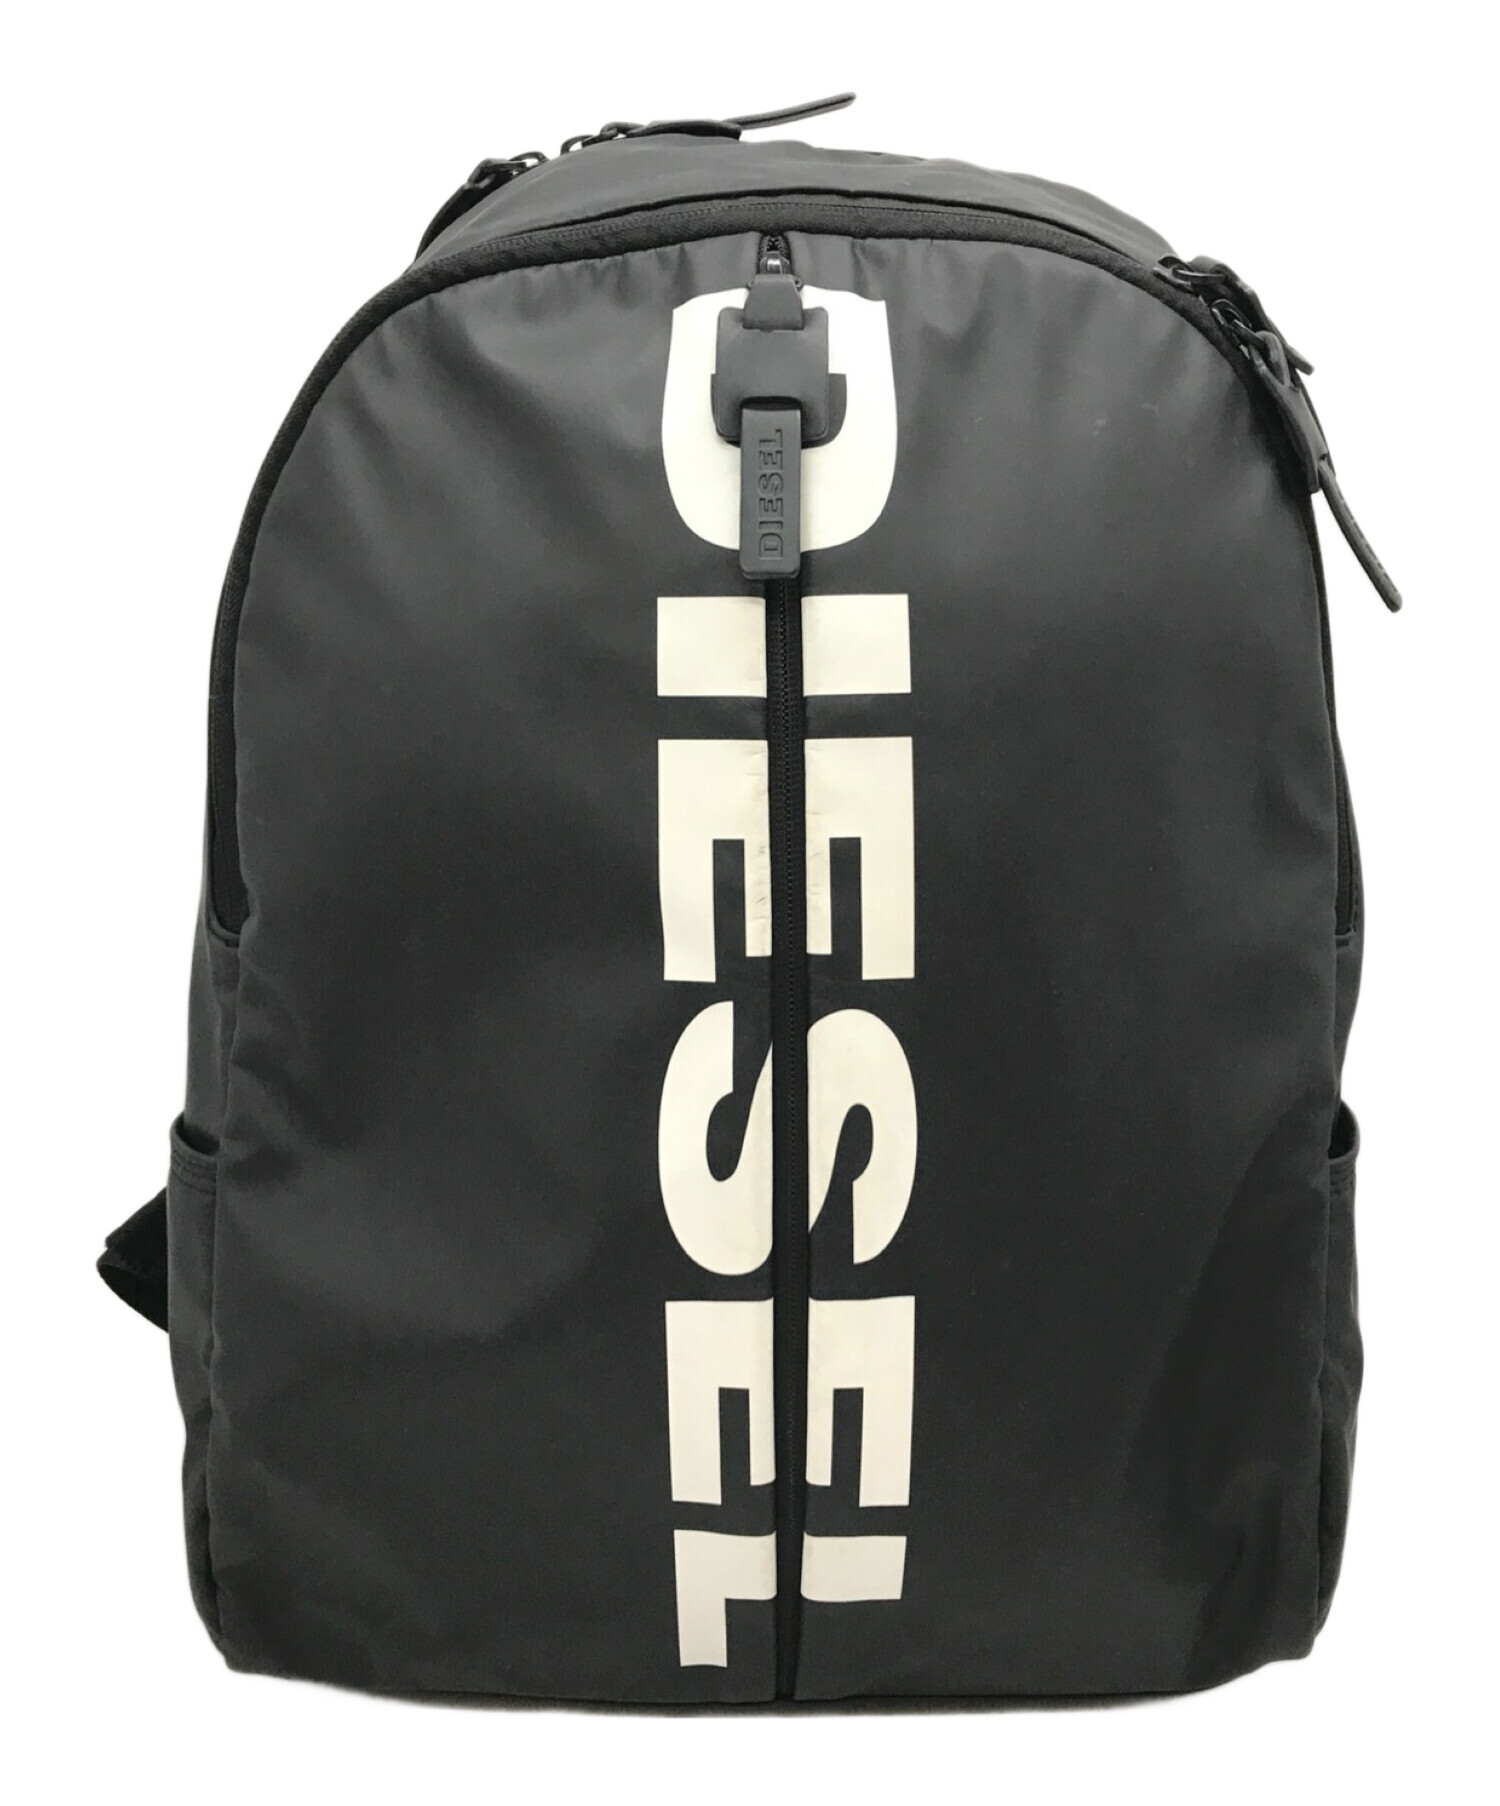 DIESEL (ディーゼル) ロゴデザインバックパック ブラック サイズ:下記参照